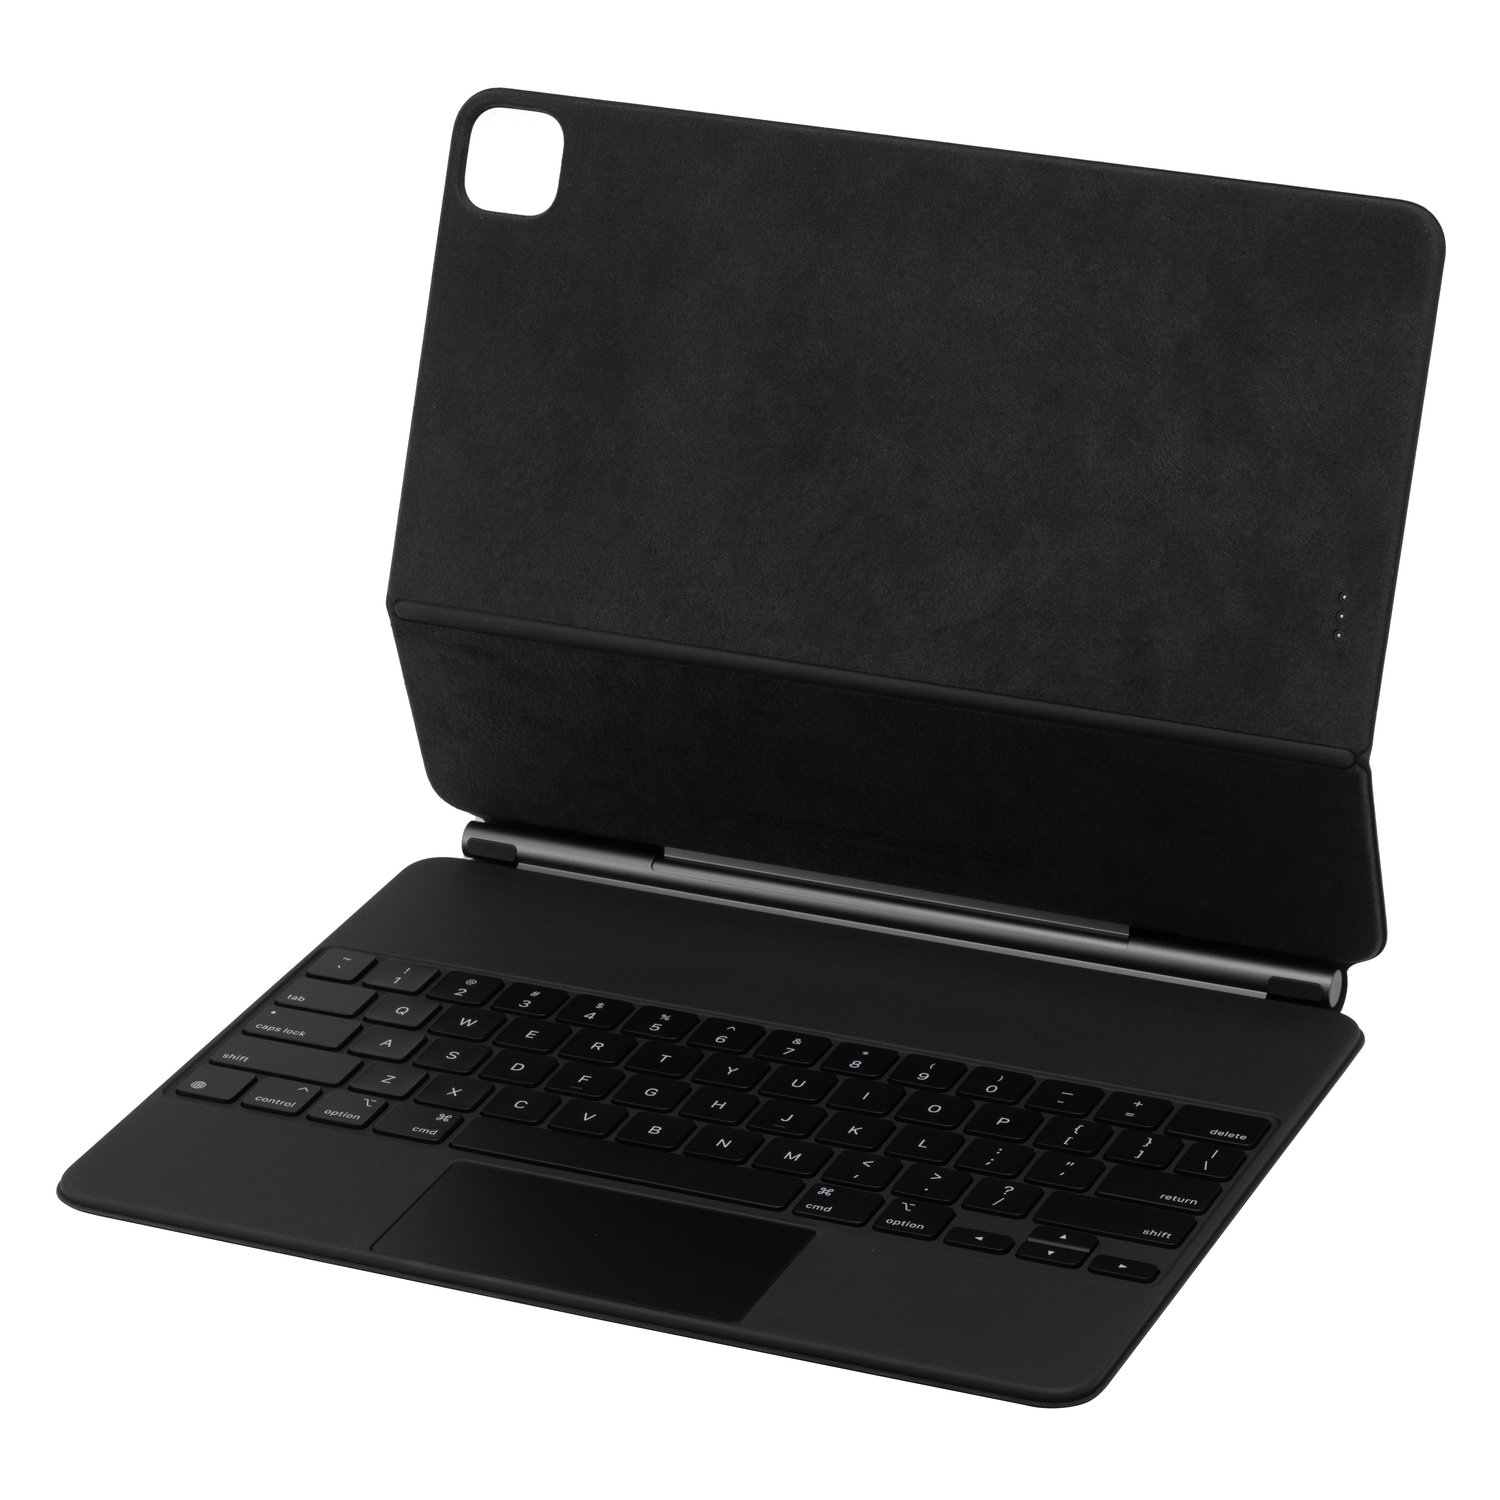 Apple MXQU2LL/A Magic Keyboard with Trackpad... at MacSales.com